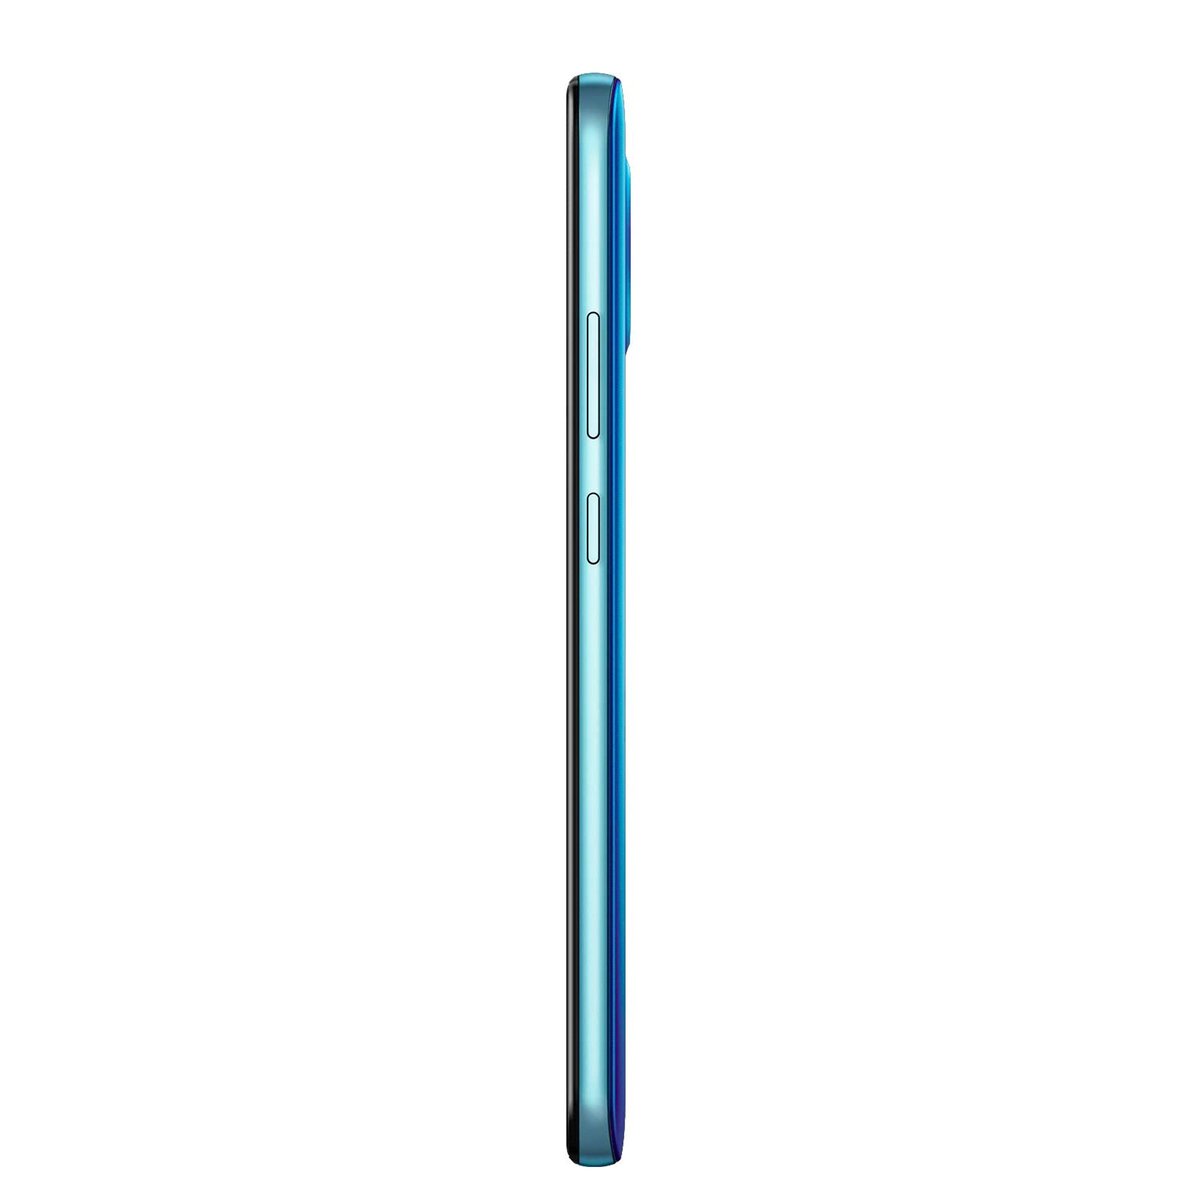 Nokia 3.4 TA-1288 64GB Blue